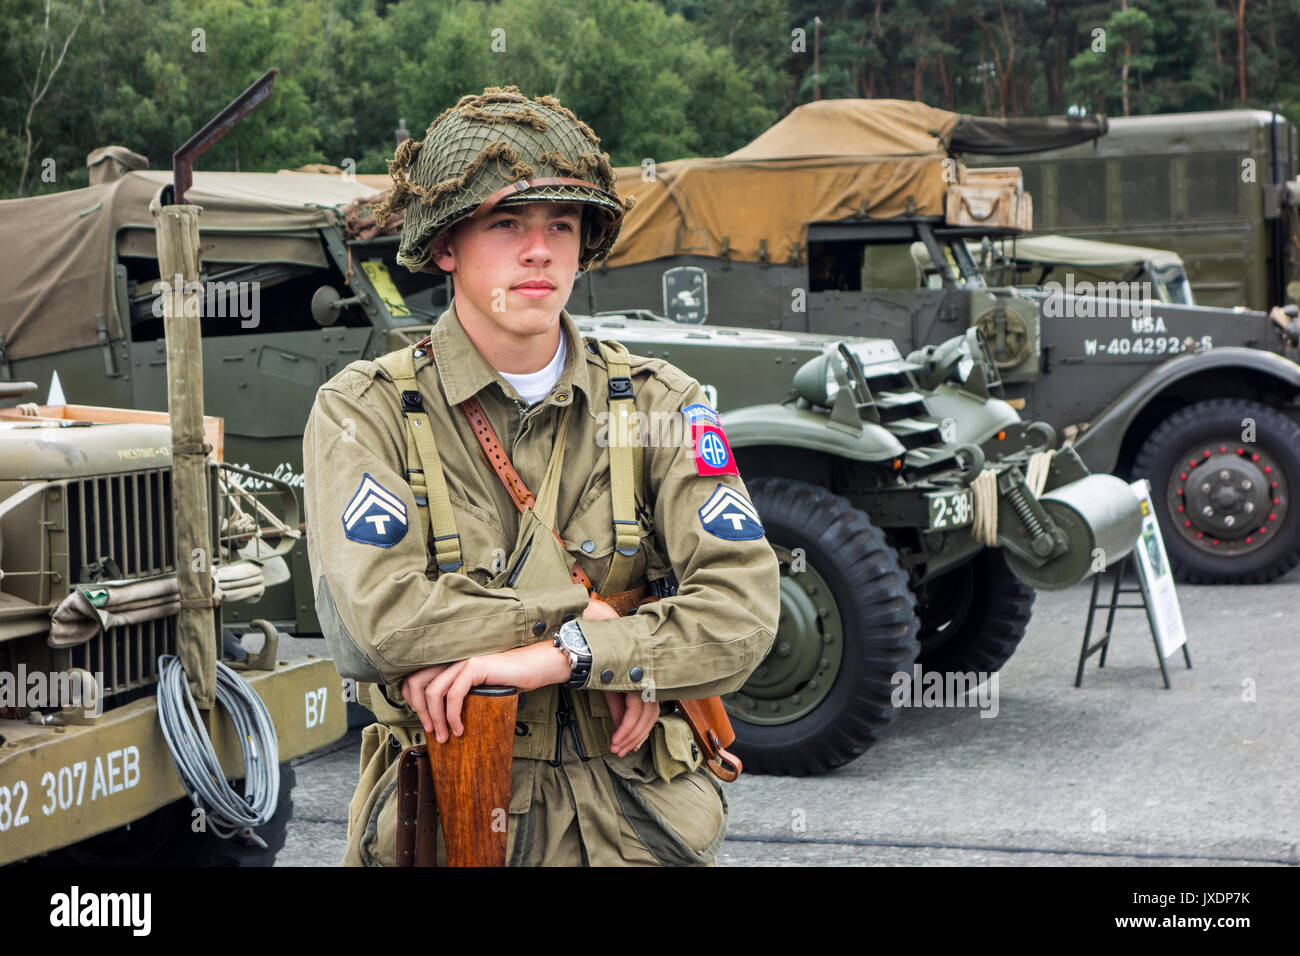 Les jeunes de la reconstitution médiévale posing in WW2 US Airborne uniforme avec grade de technicien/5e année d'un insigne à l'avant de la Seconde Guerre mondiale, deux camions américains à militaria juste Banque D'Images